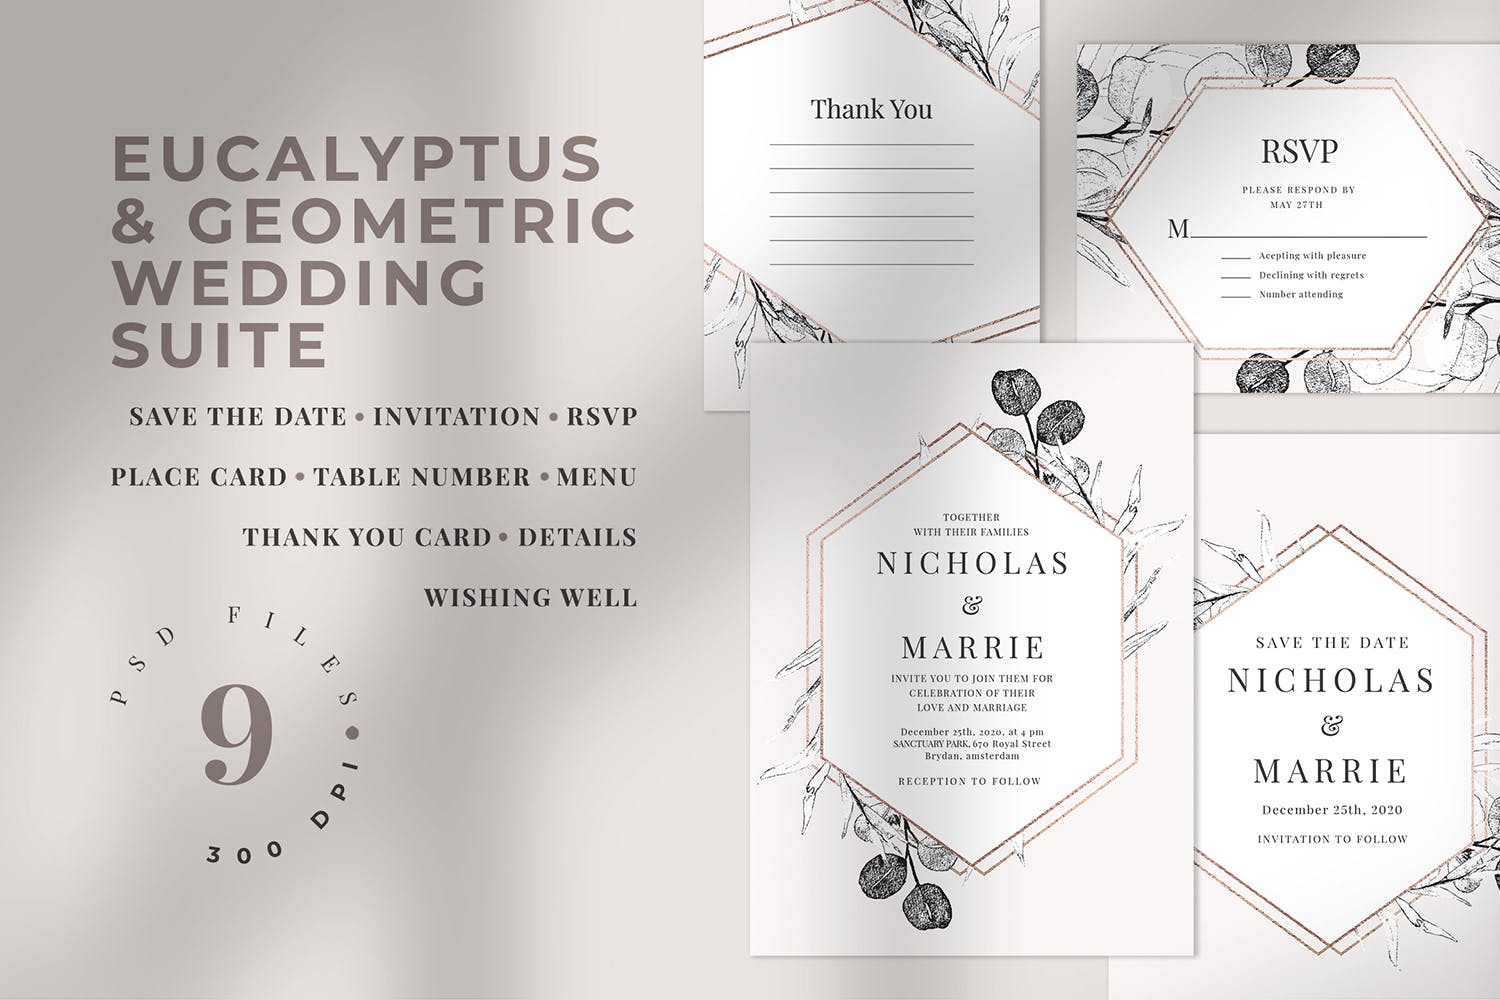 桉树和几何图形手绘图案背景婚礼邀请函设计套件 Eucalyptus & Geometric Wedding Suite插图1